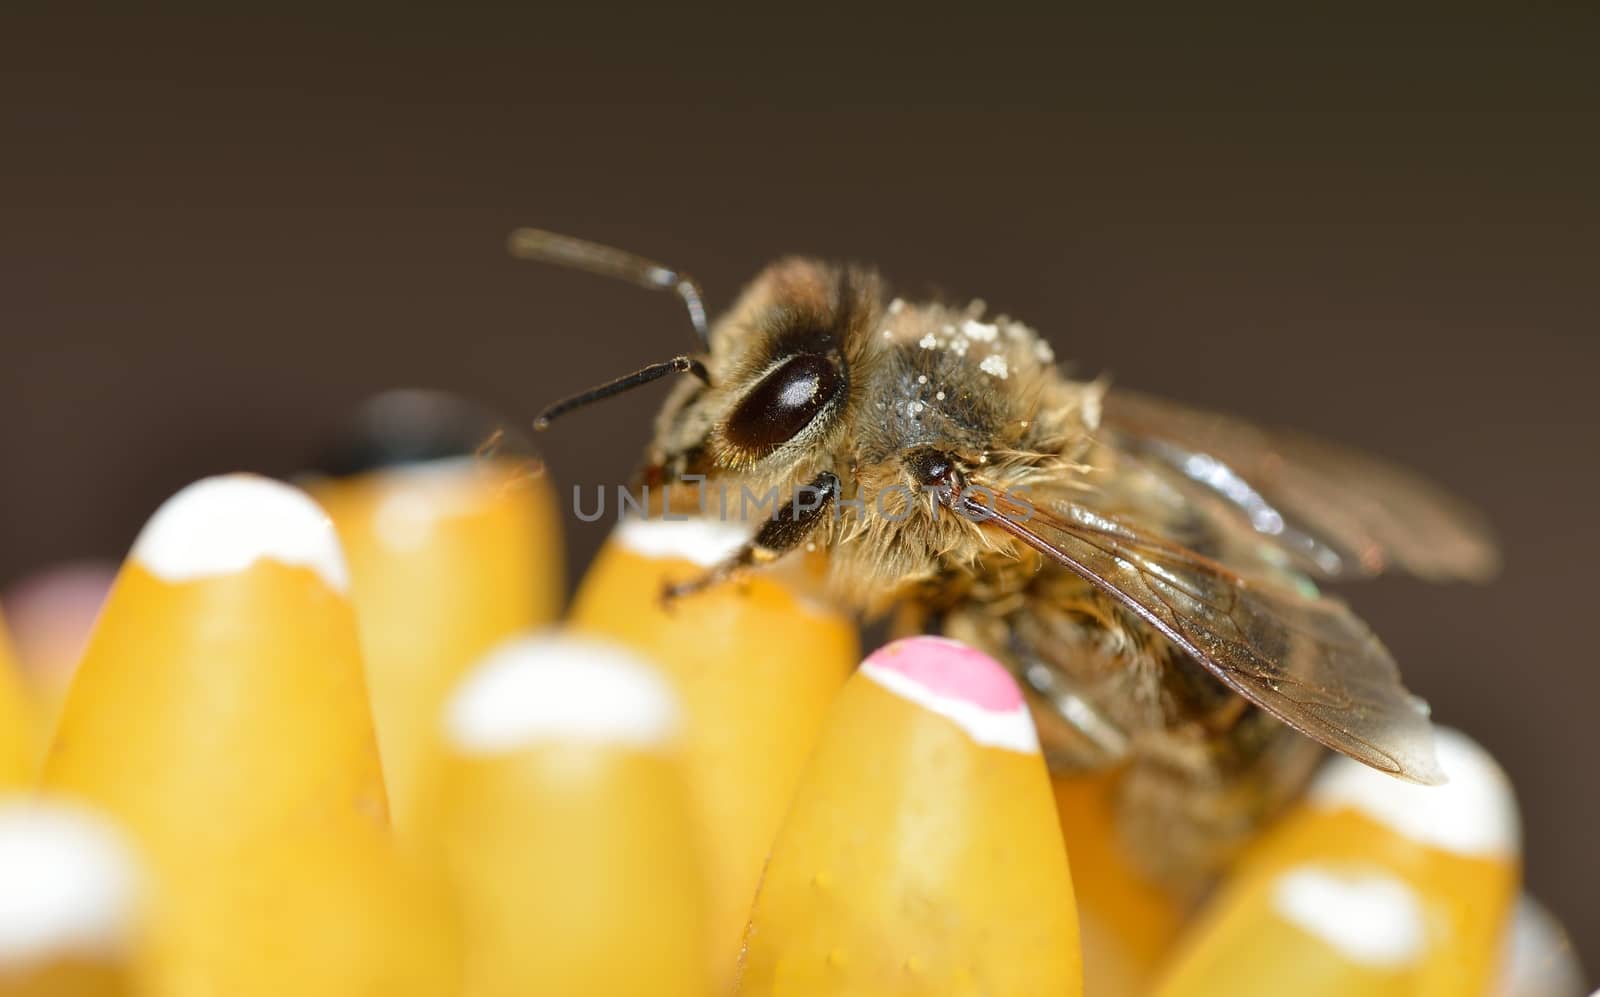 A close-up of a honeybee